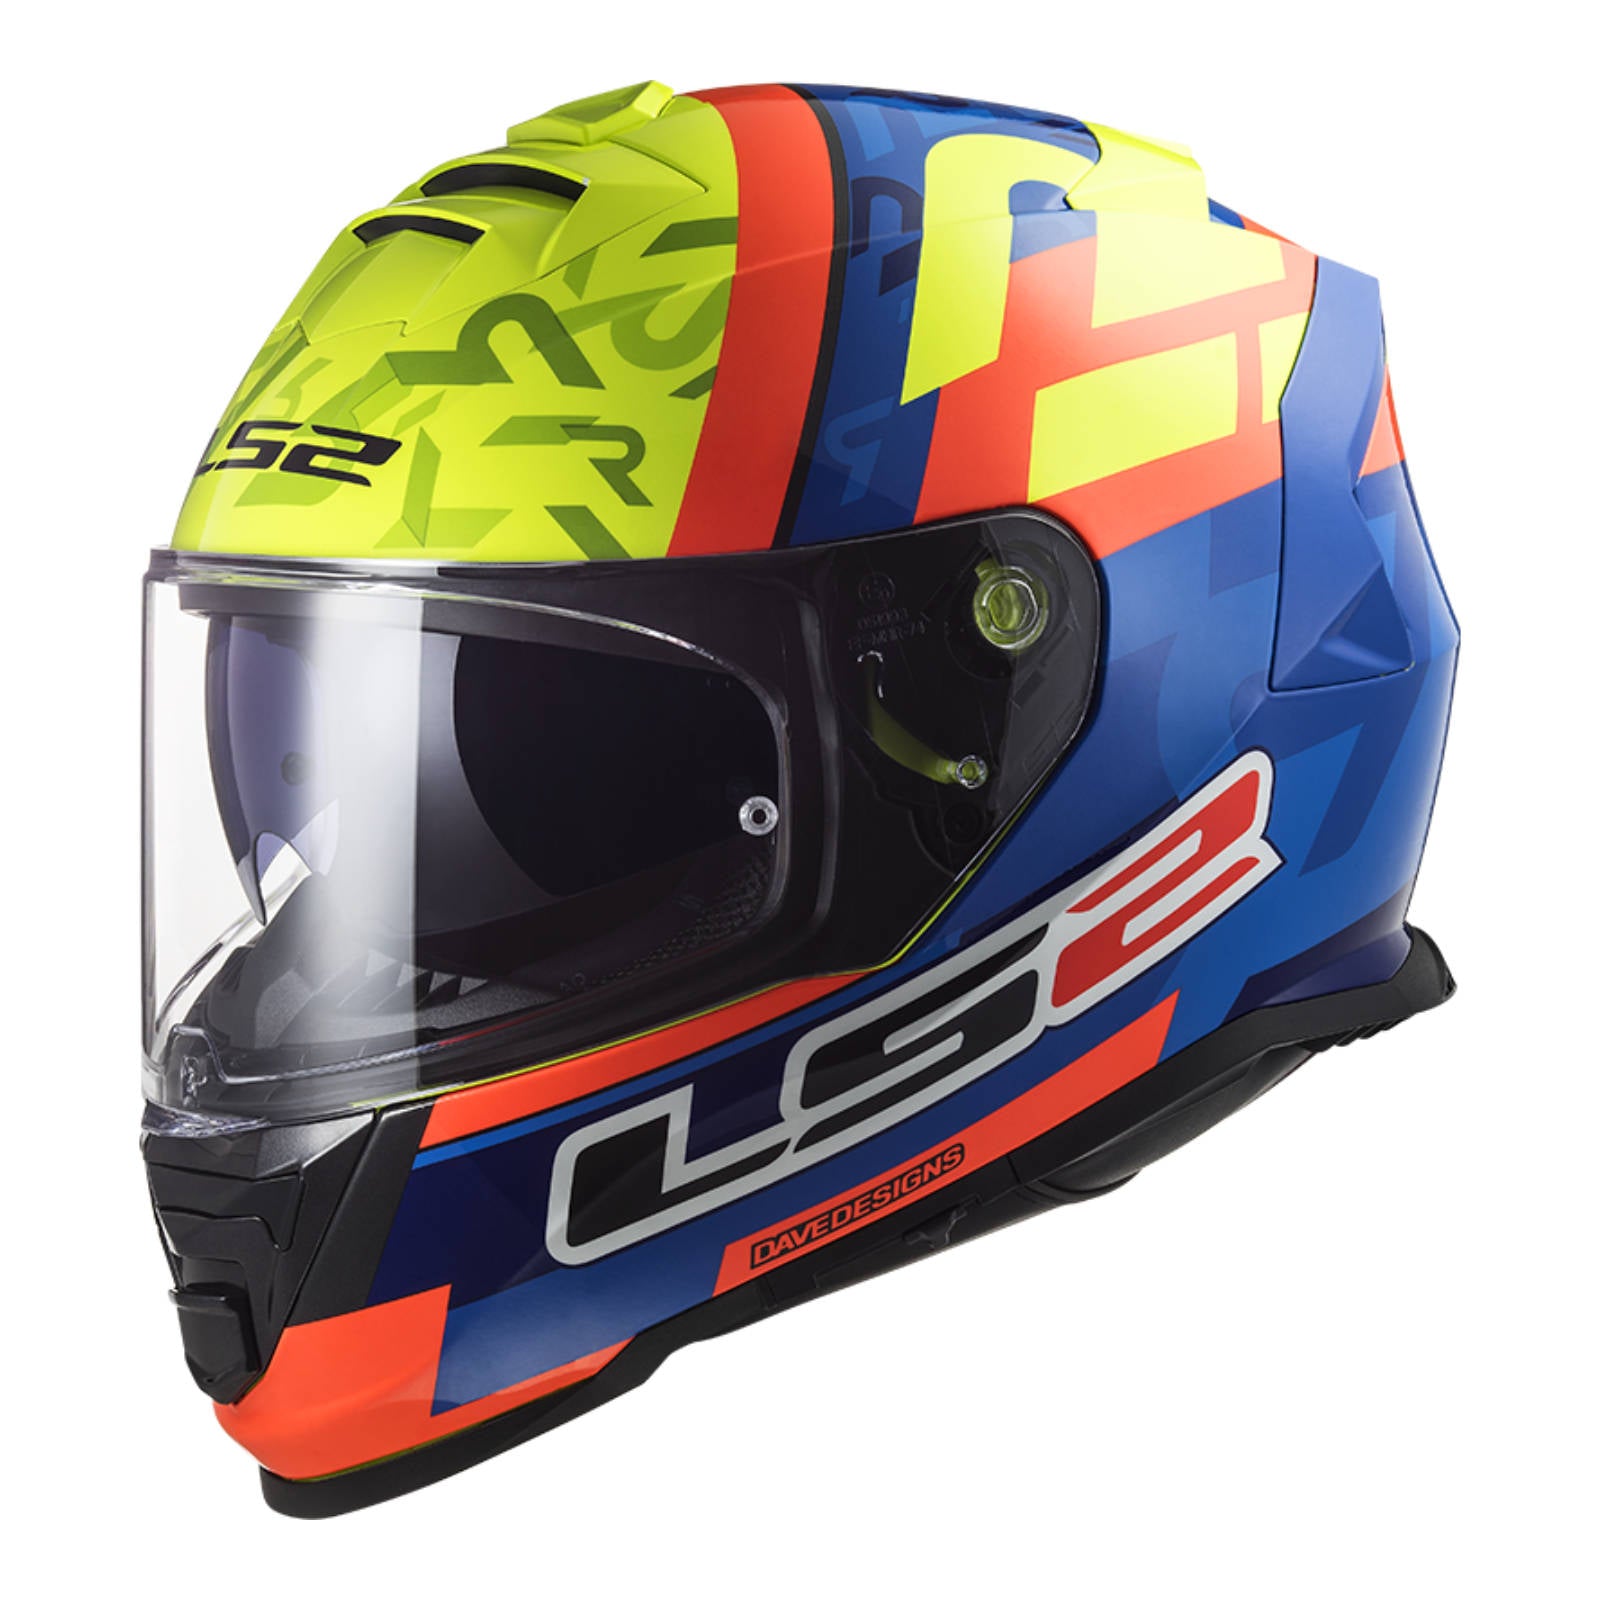 LS2 FF800 Storm Salvador Replica Helmet - Matte Yellow / Blue / Orange (L)